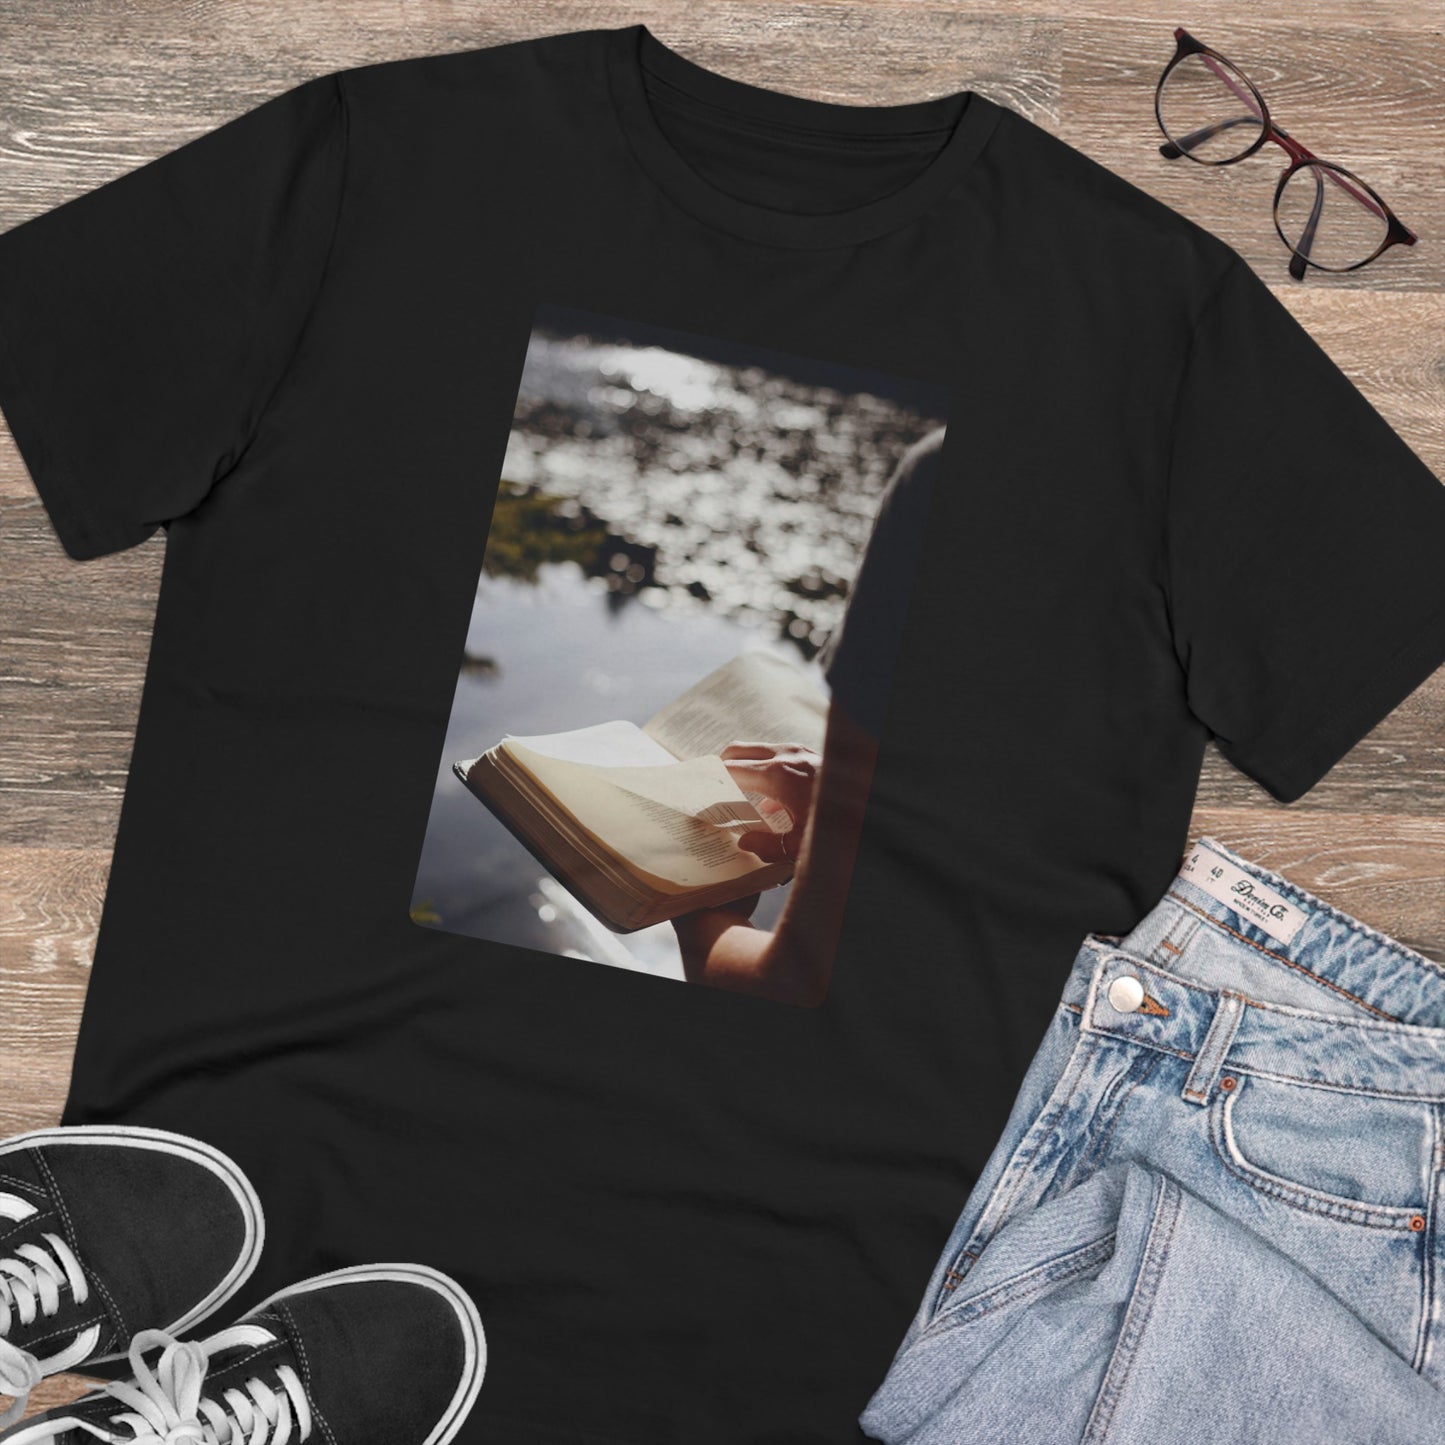 Water’s Edge - T-shirt